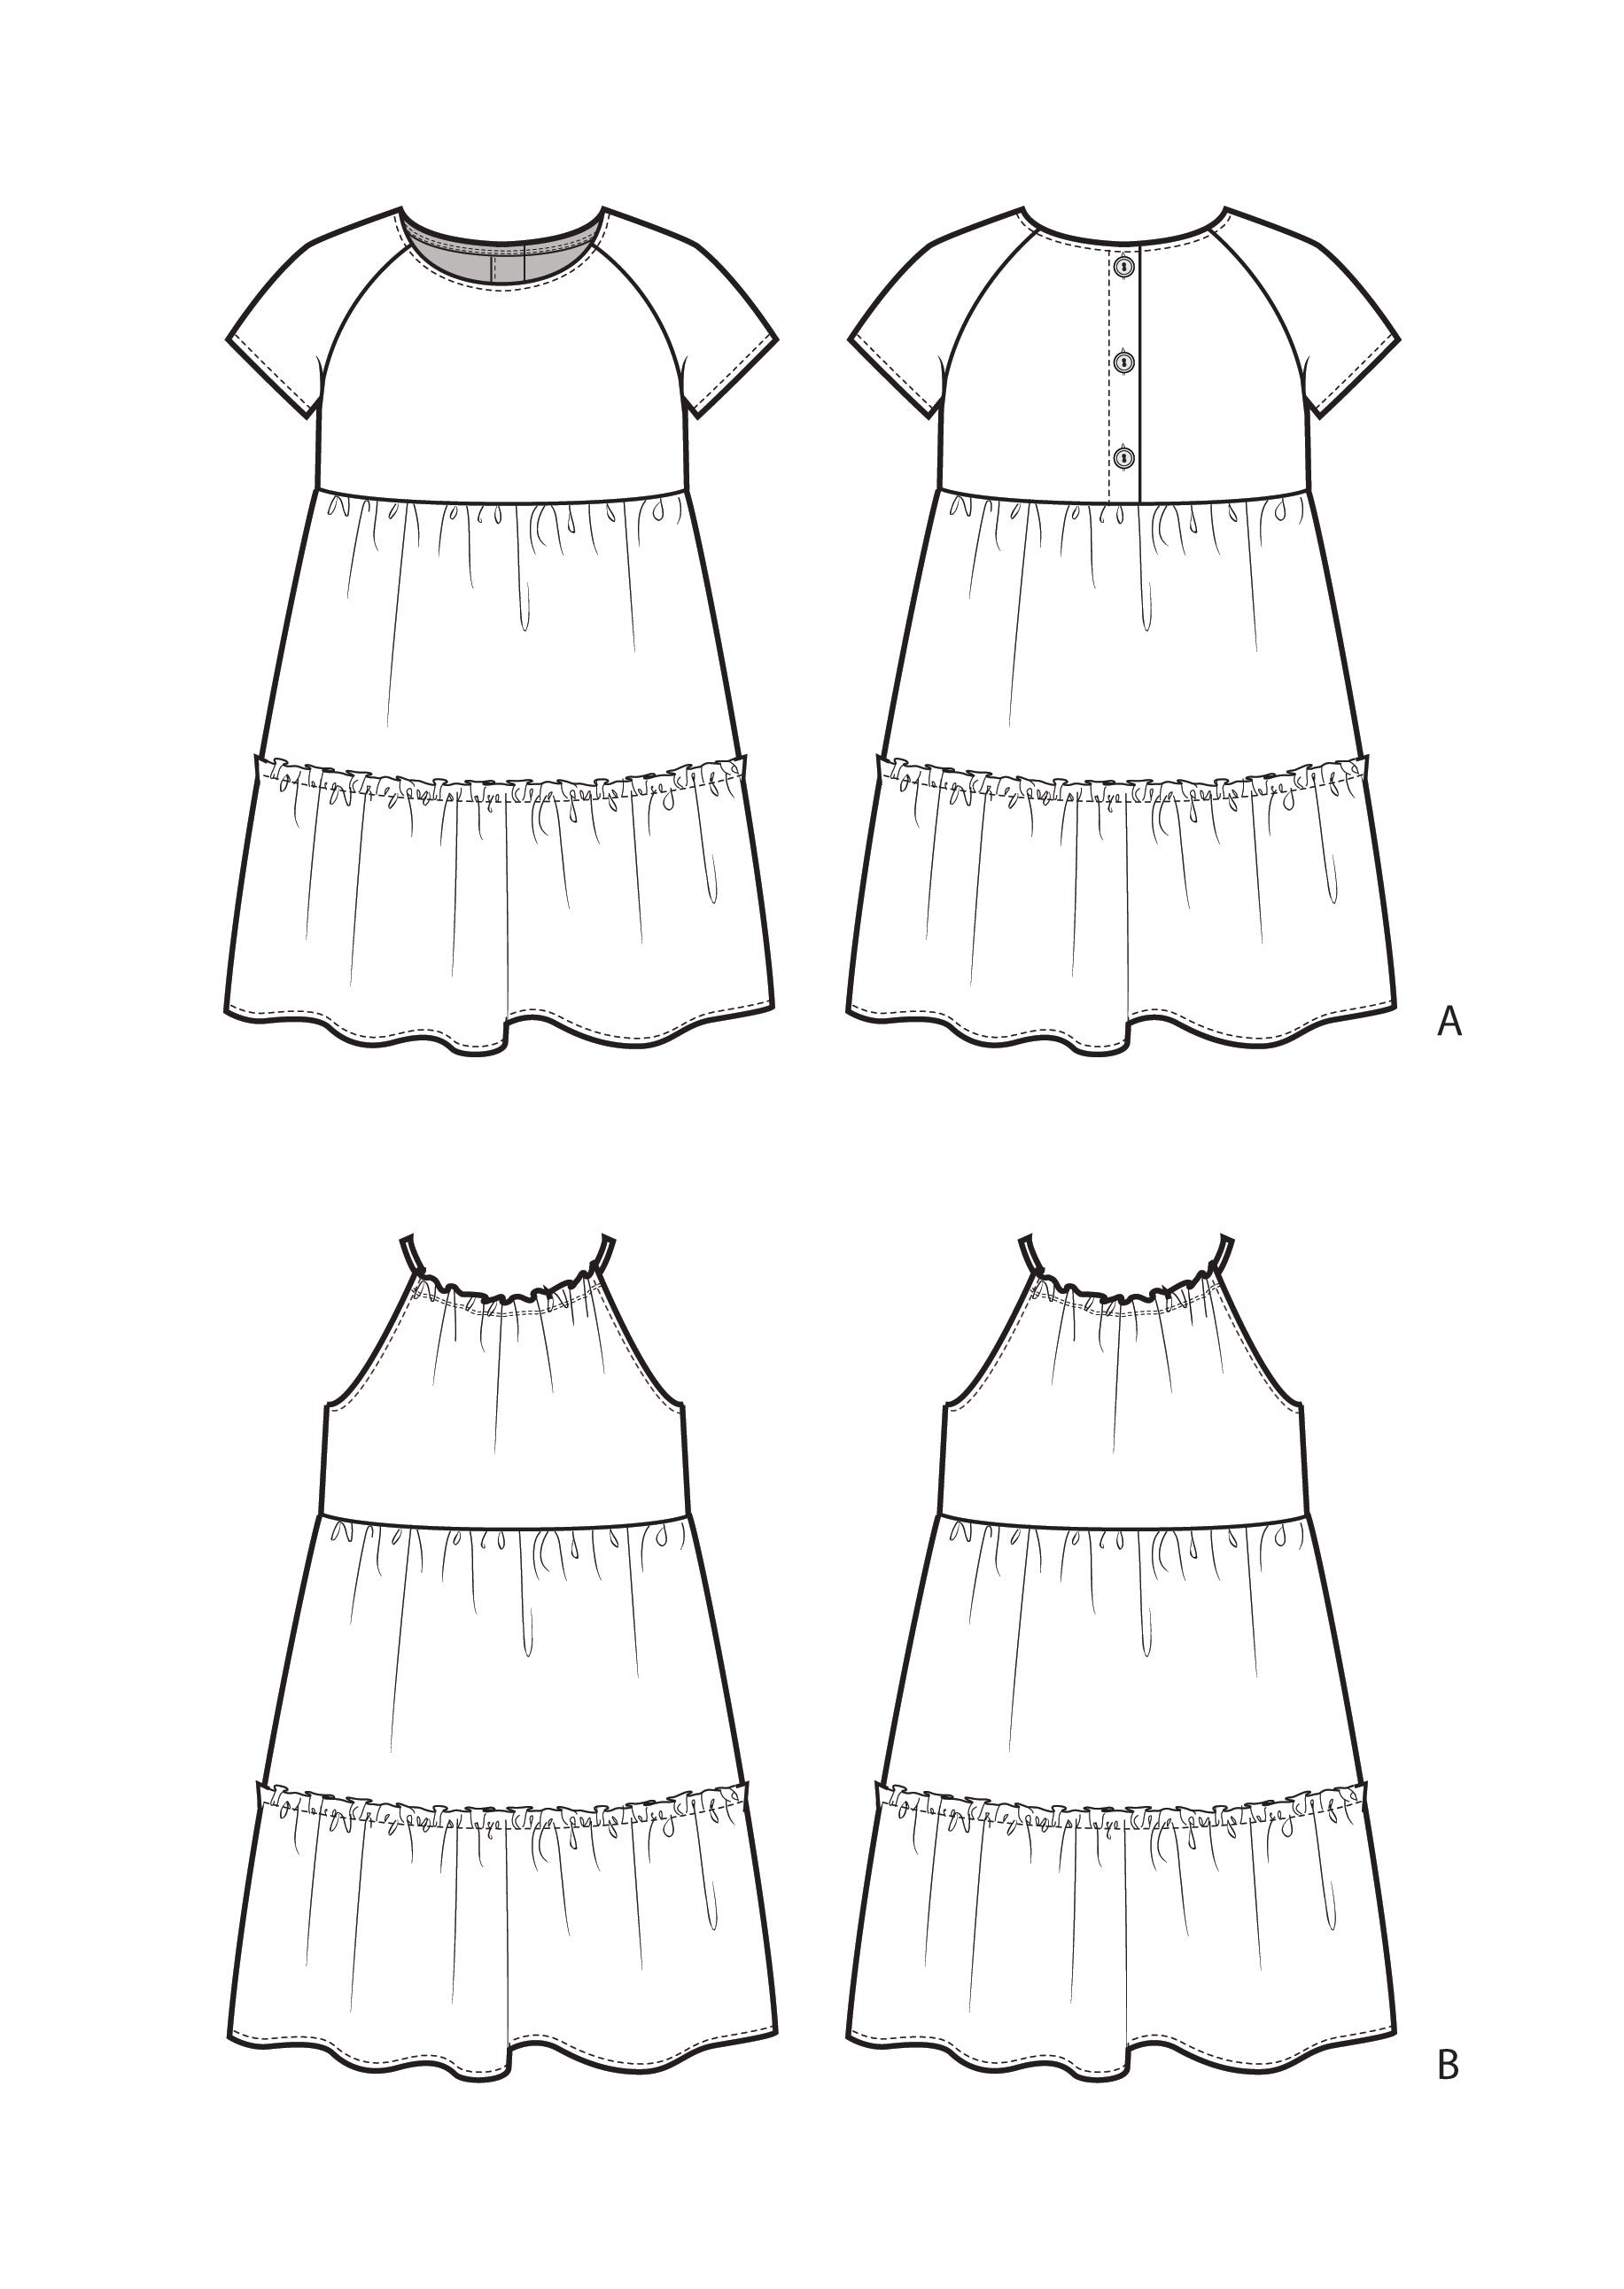 How to Draw Barbi Dress Dolls Dress Up